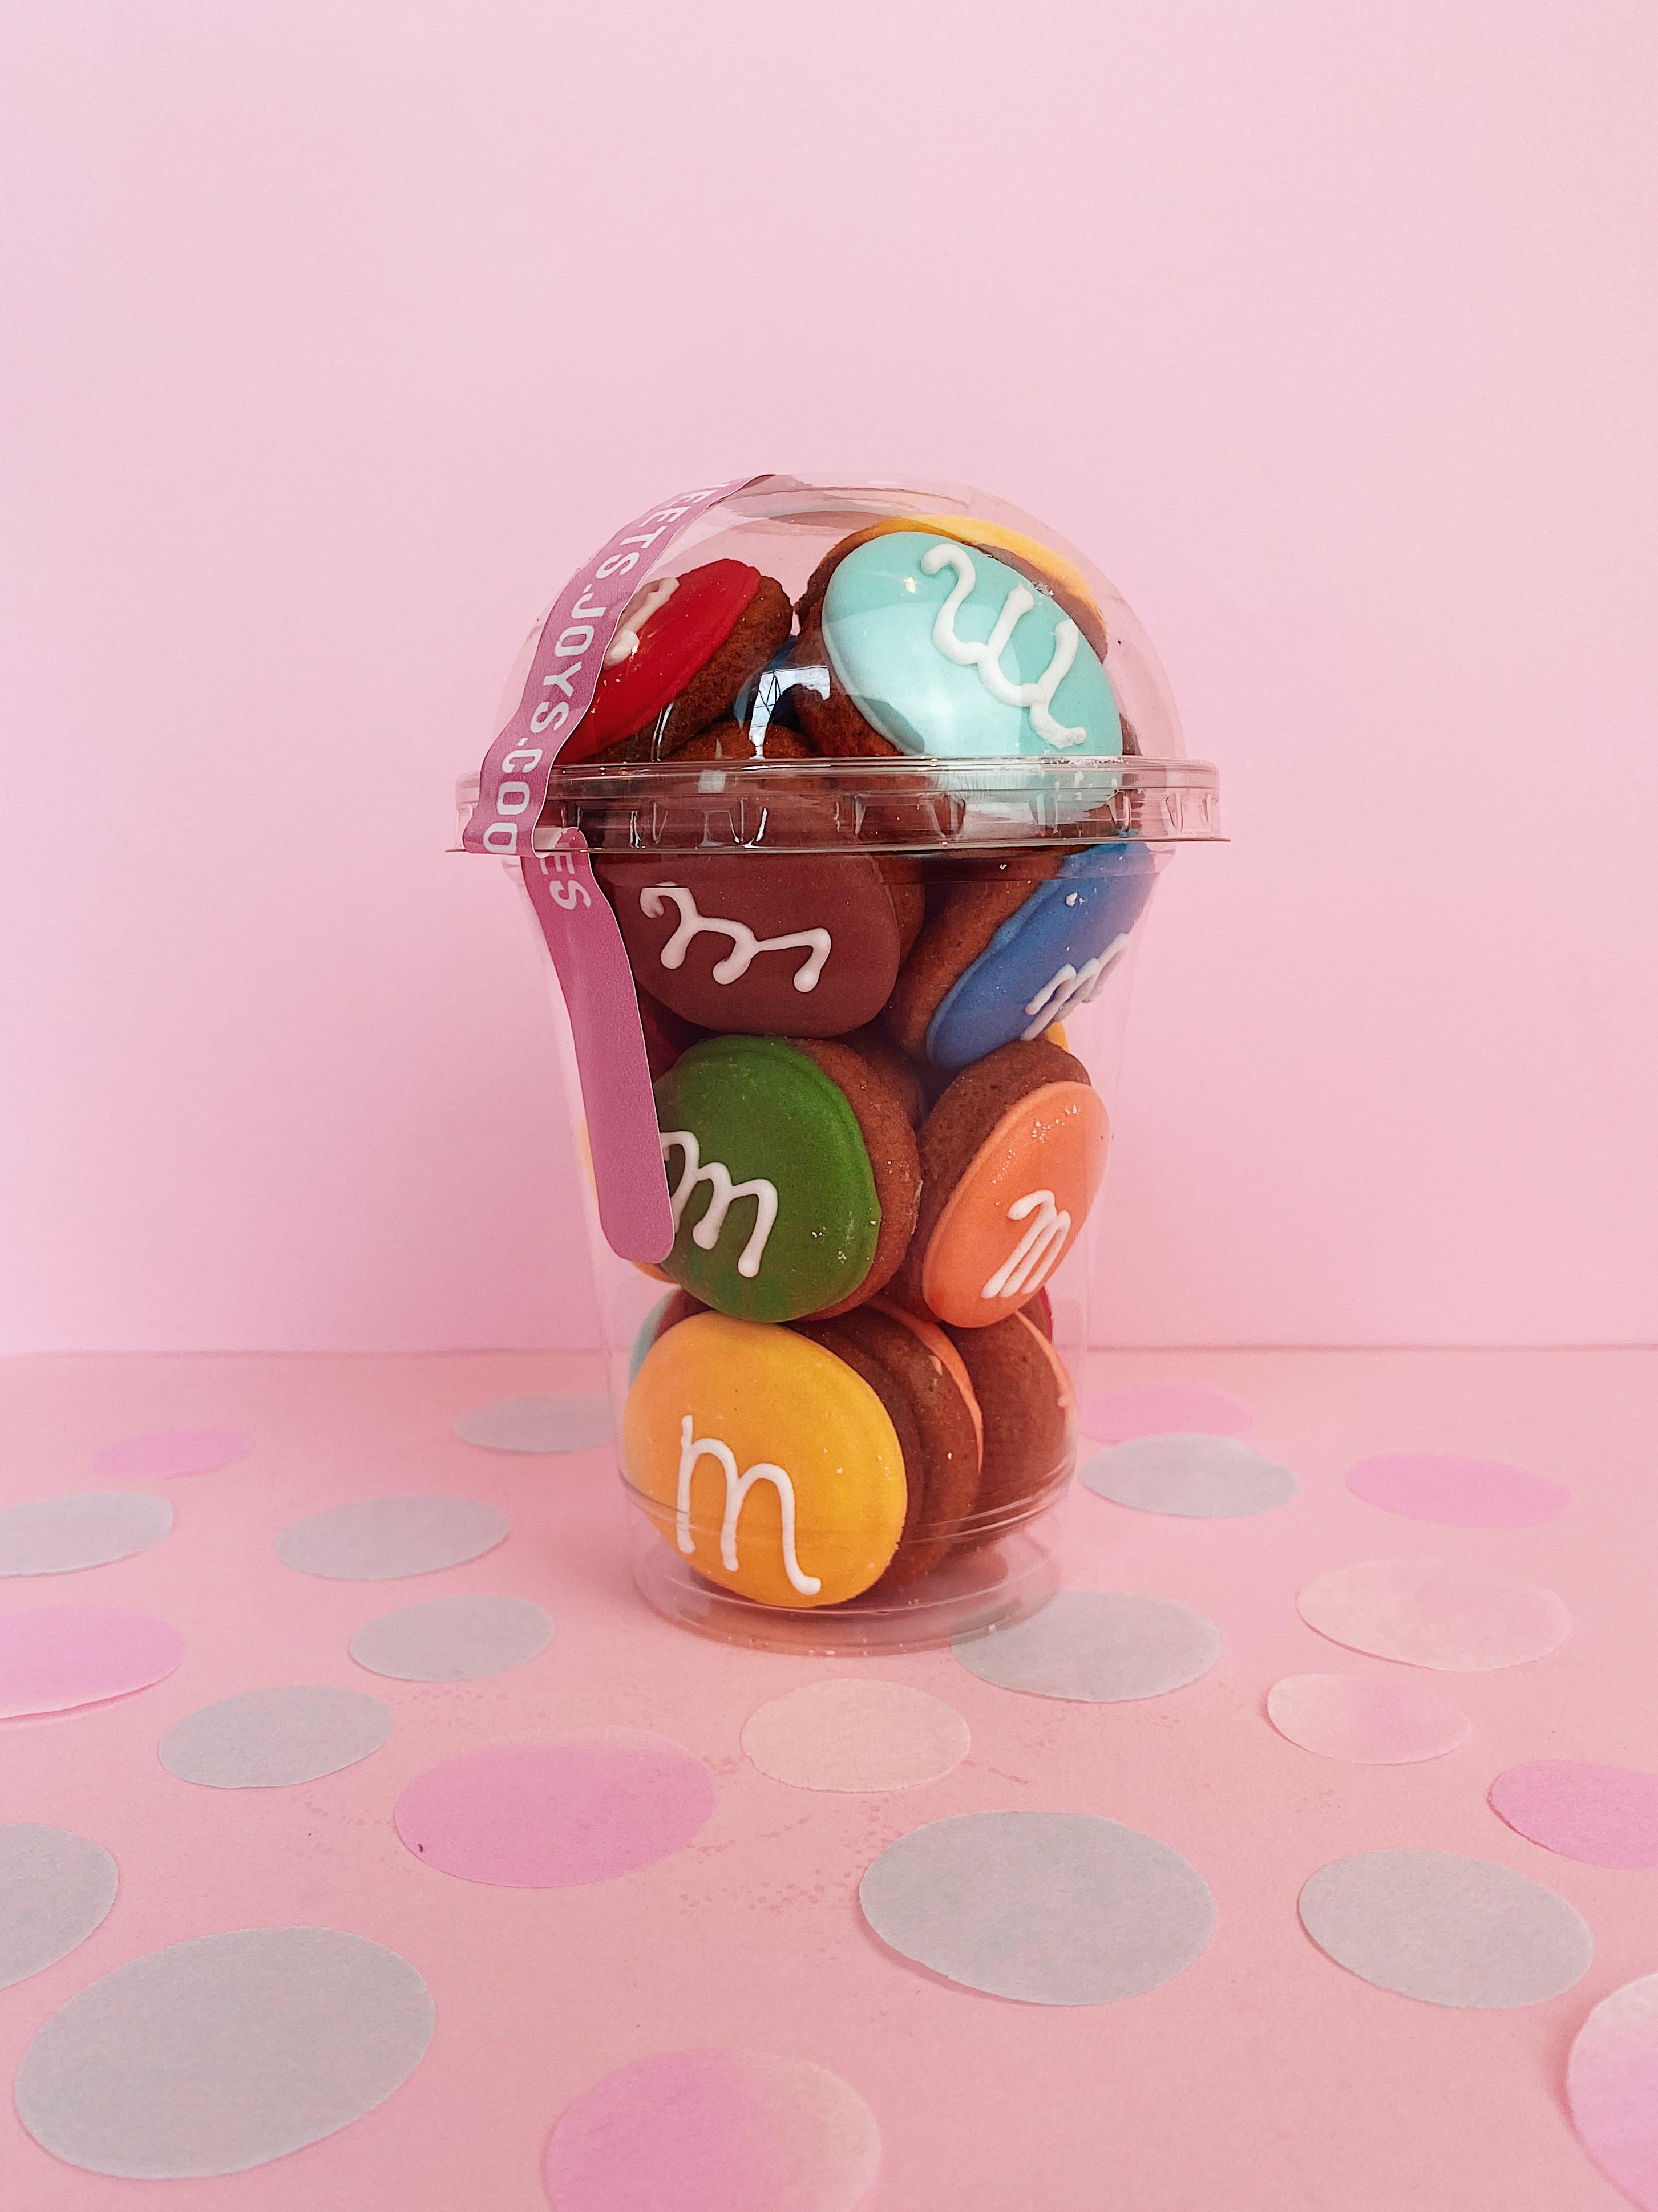 Імбирний пряник Sweets&joys Стаканчик M&M’s 25 шт. (1001119) - фото 1